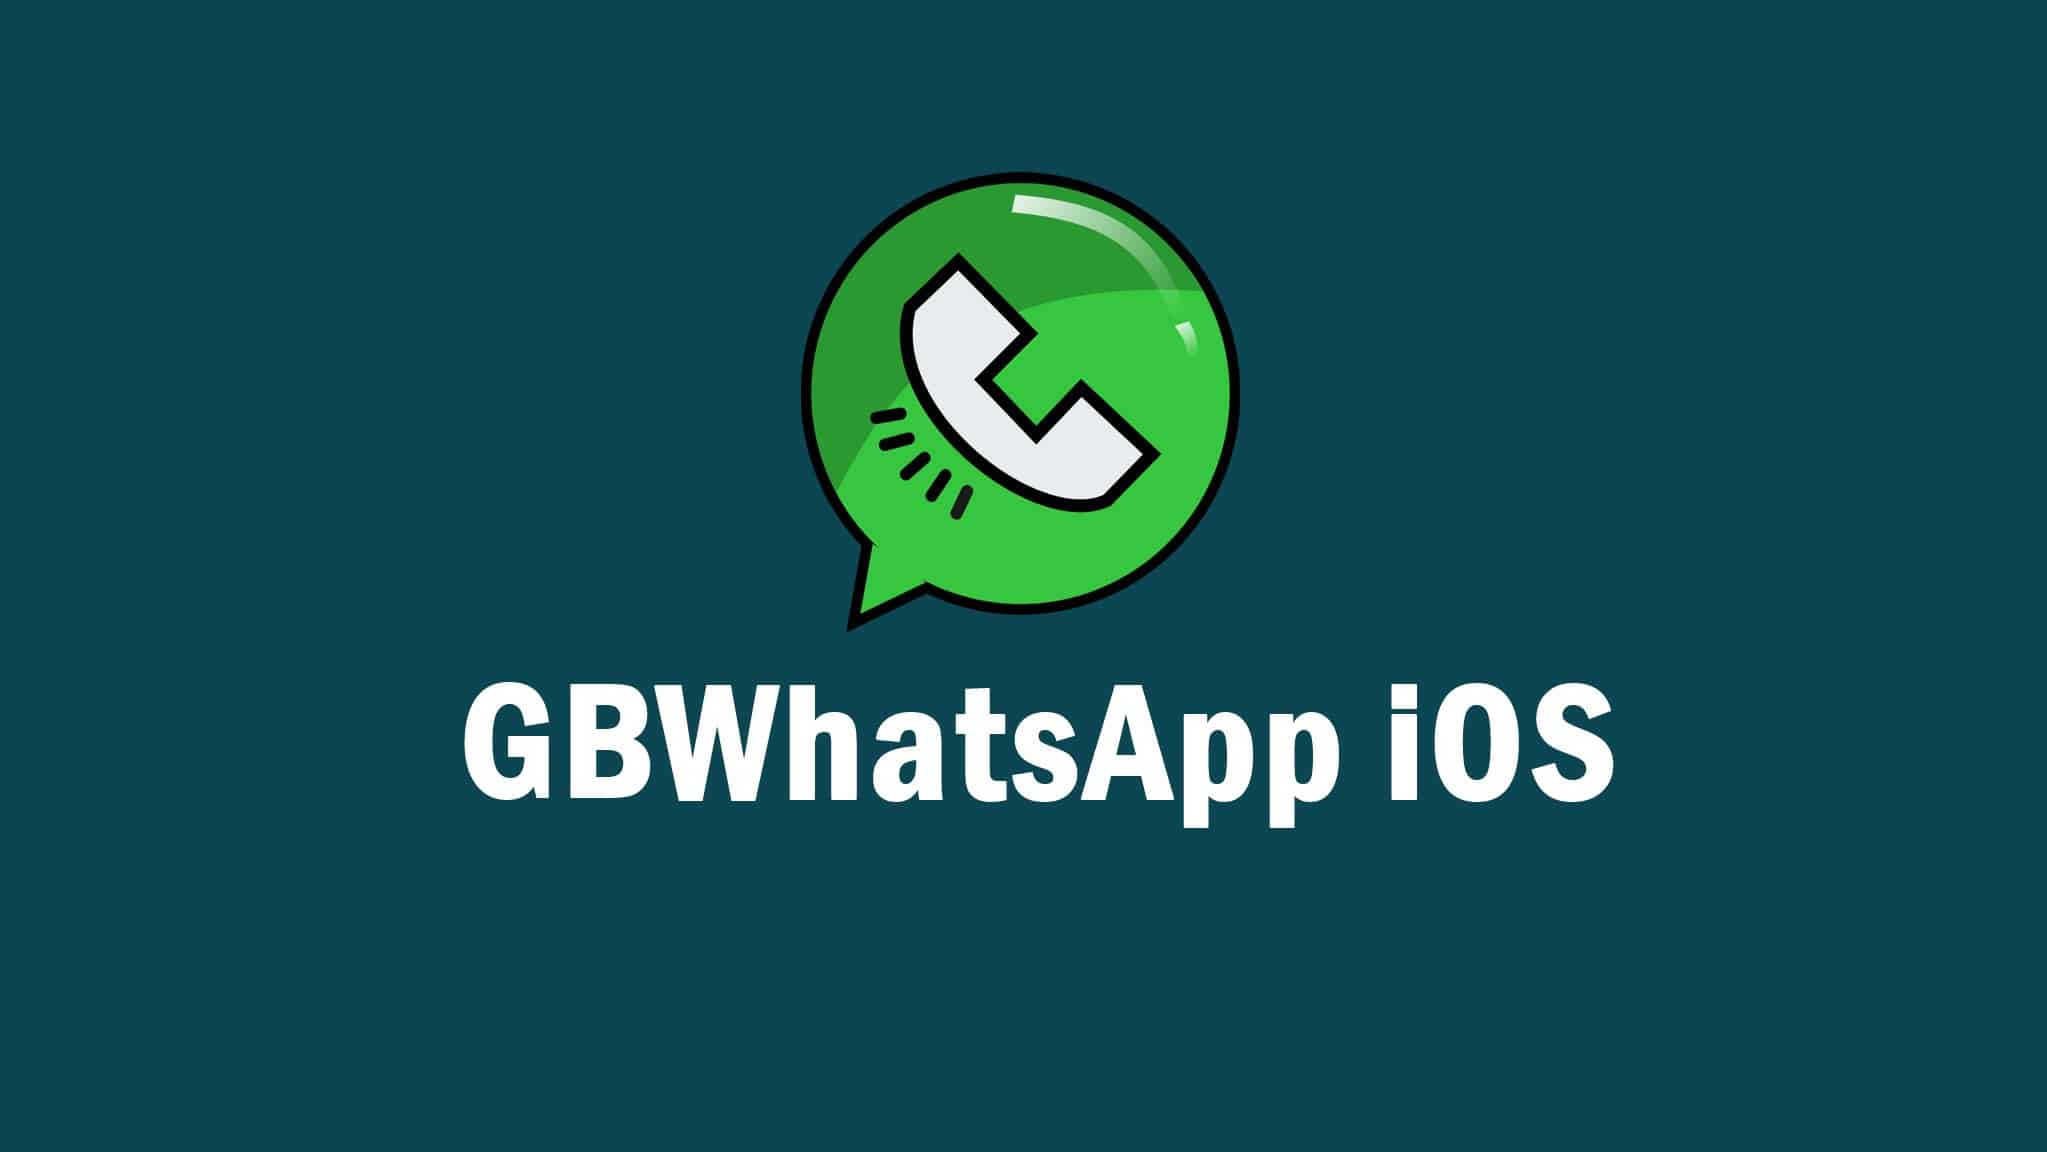 GB-Whatsapp-iOS